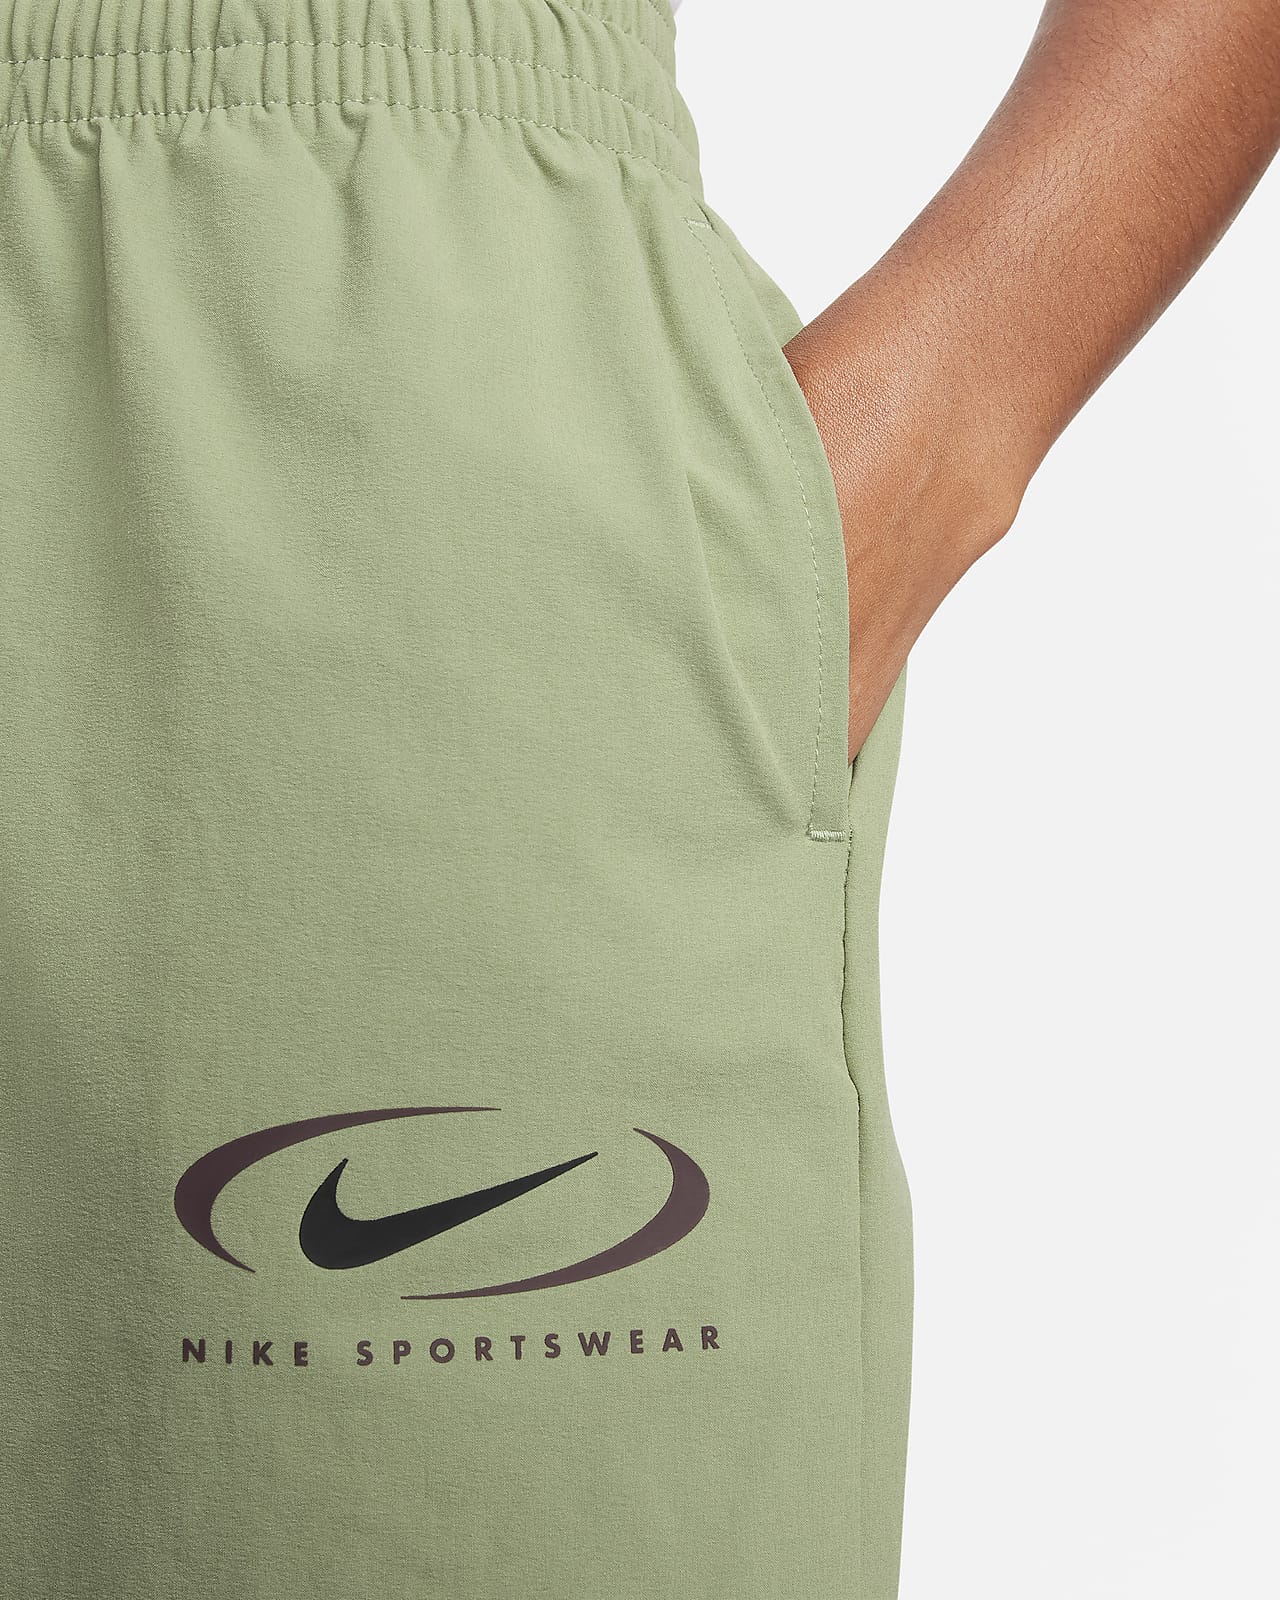 Nike Sportswear Women's Woven Trousers. Nike IN